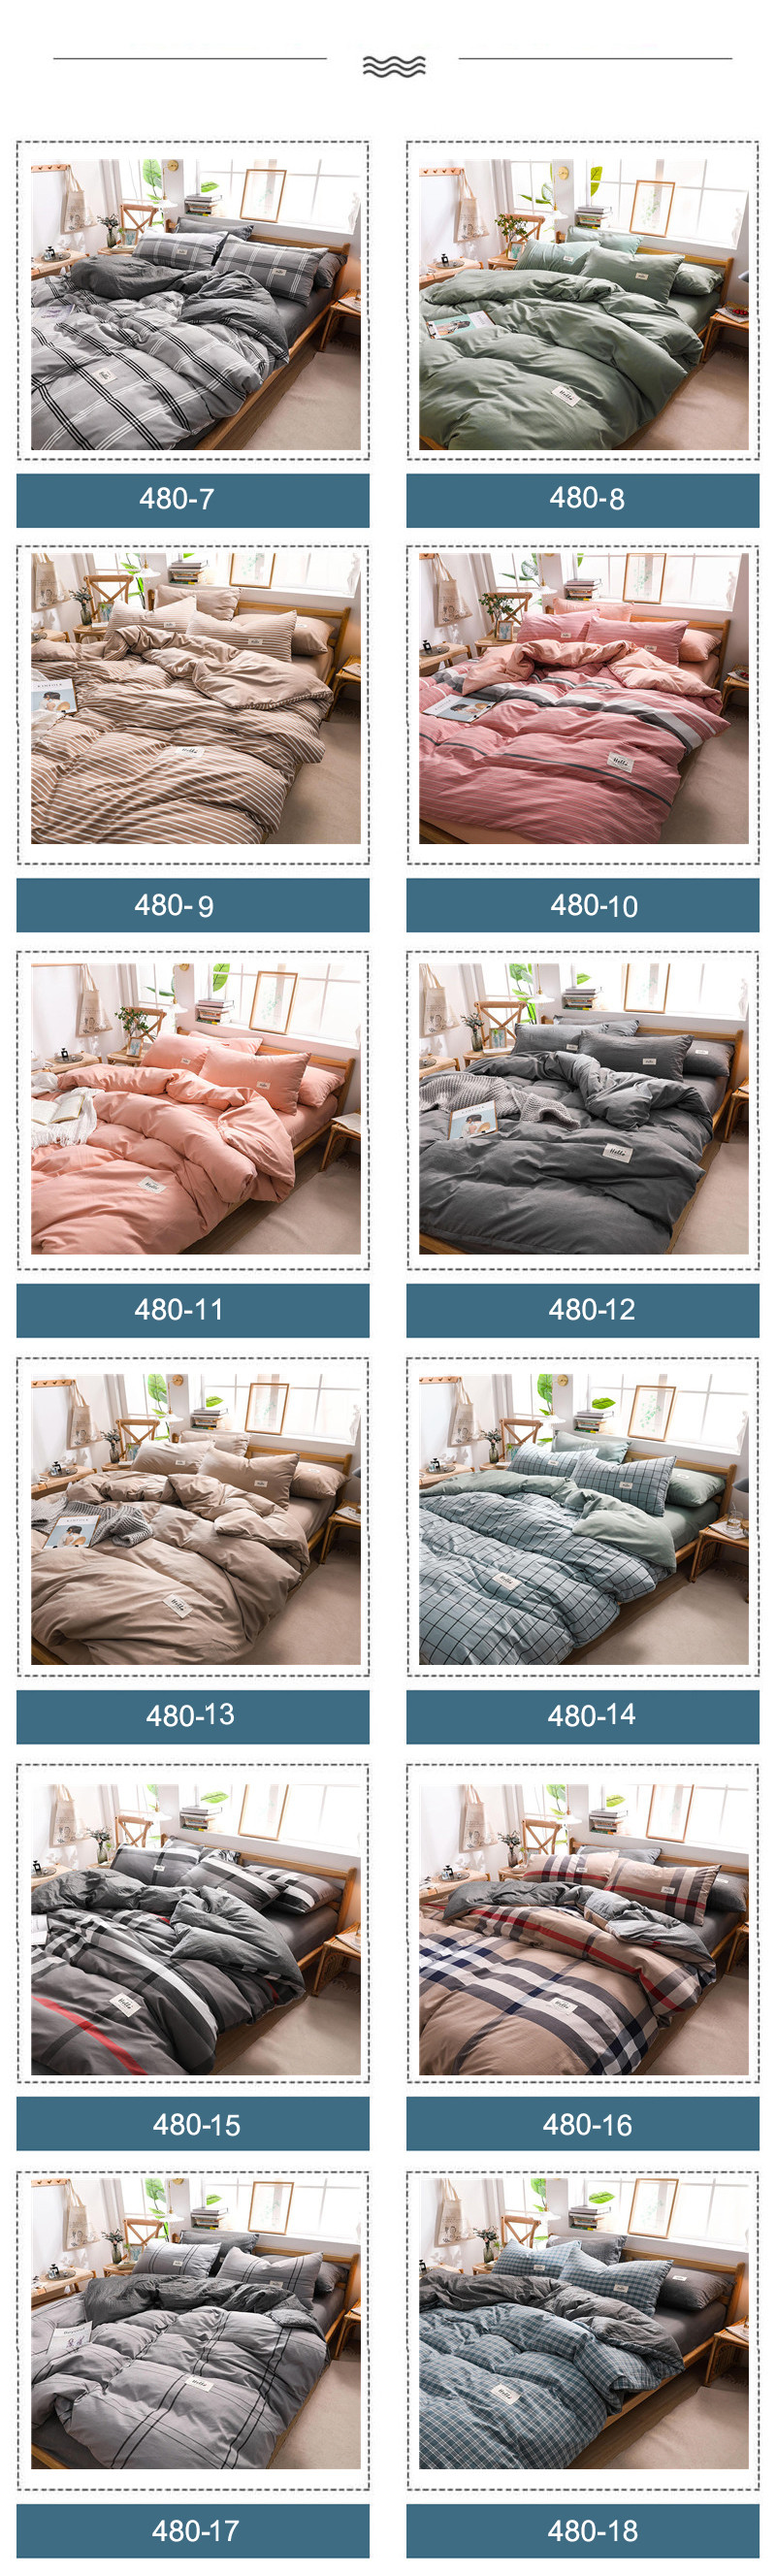 Home Textile Bed Sheet Set Light Grey Gingham